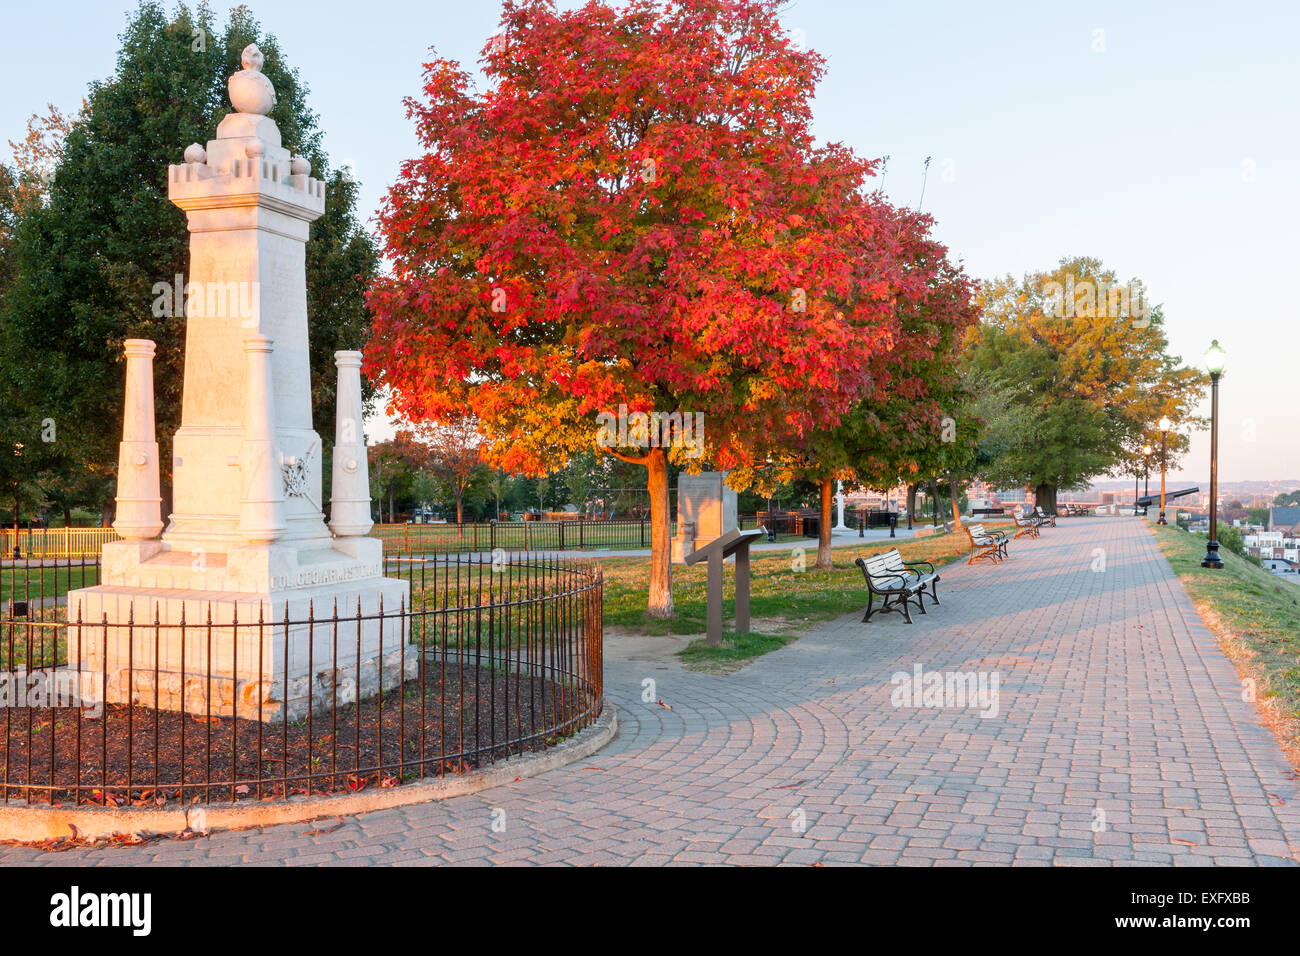 Eine herbstliche Ansicht der Federal Hill Park, darunter das Monument Lt. Colonel George Armistead, in Baltimore, Maryland. Stockfoto